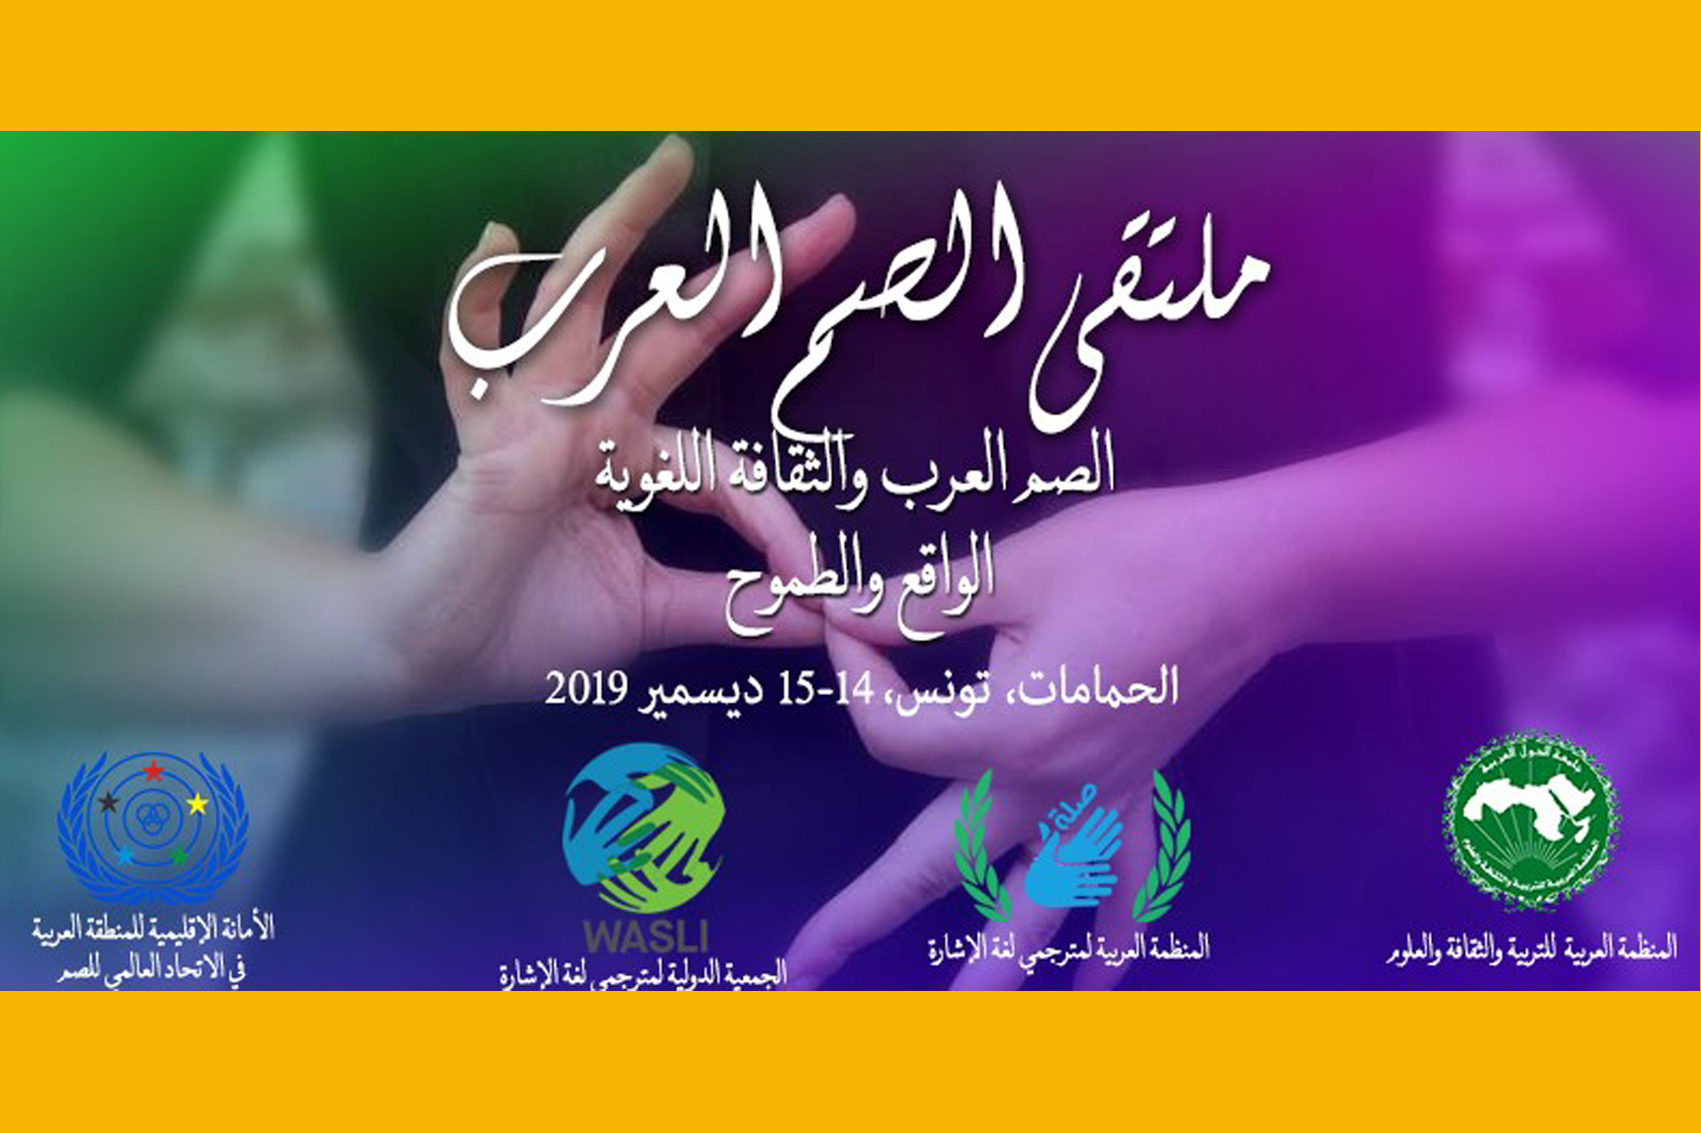 دعوة للمشاركة في ملتقى الصم العرب 14 و15 ديسمبر 2019)